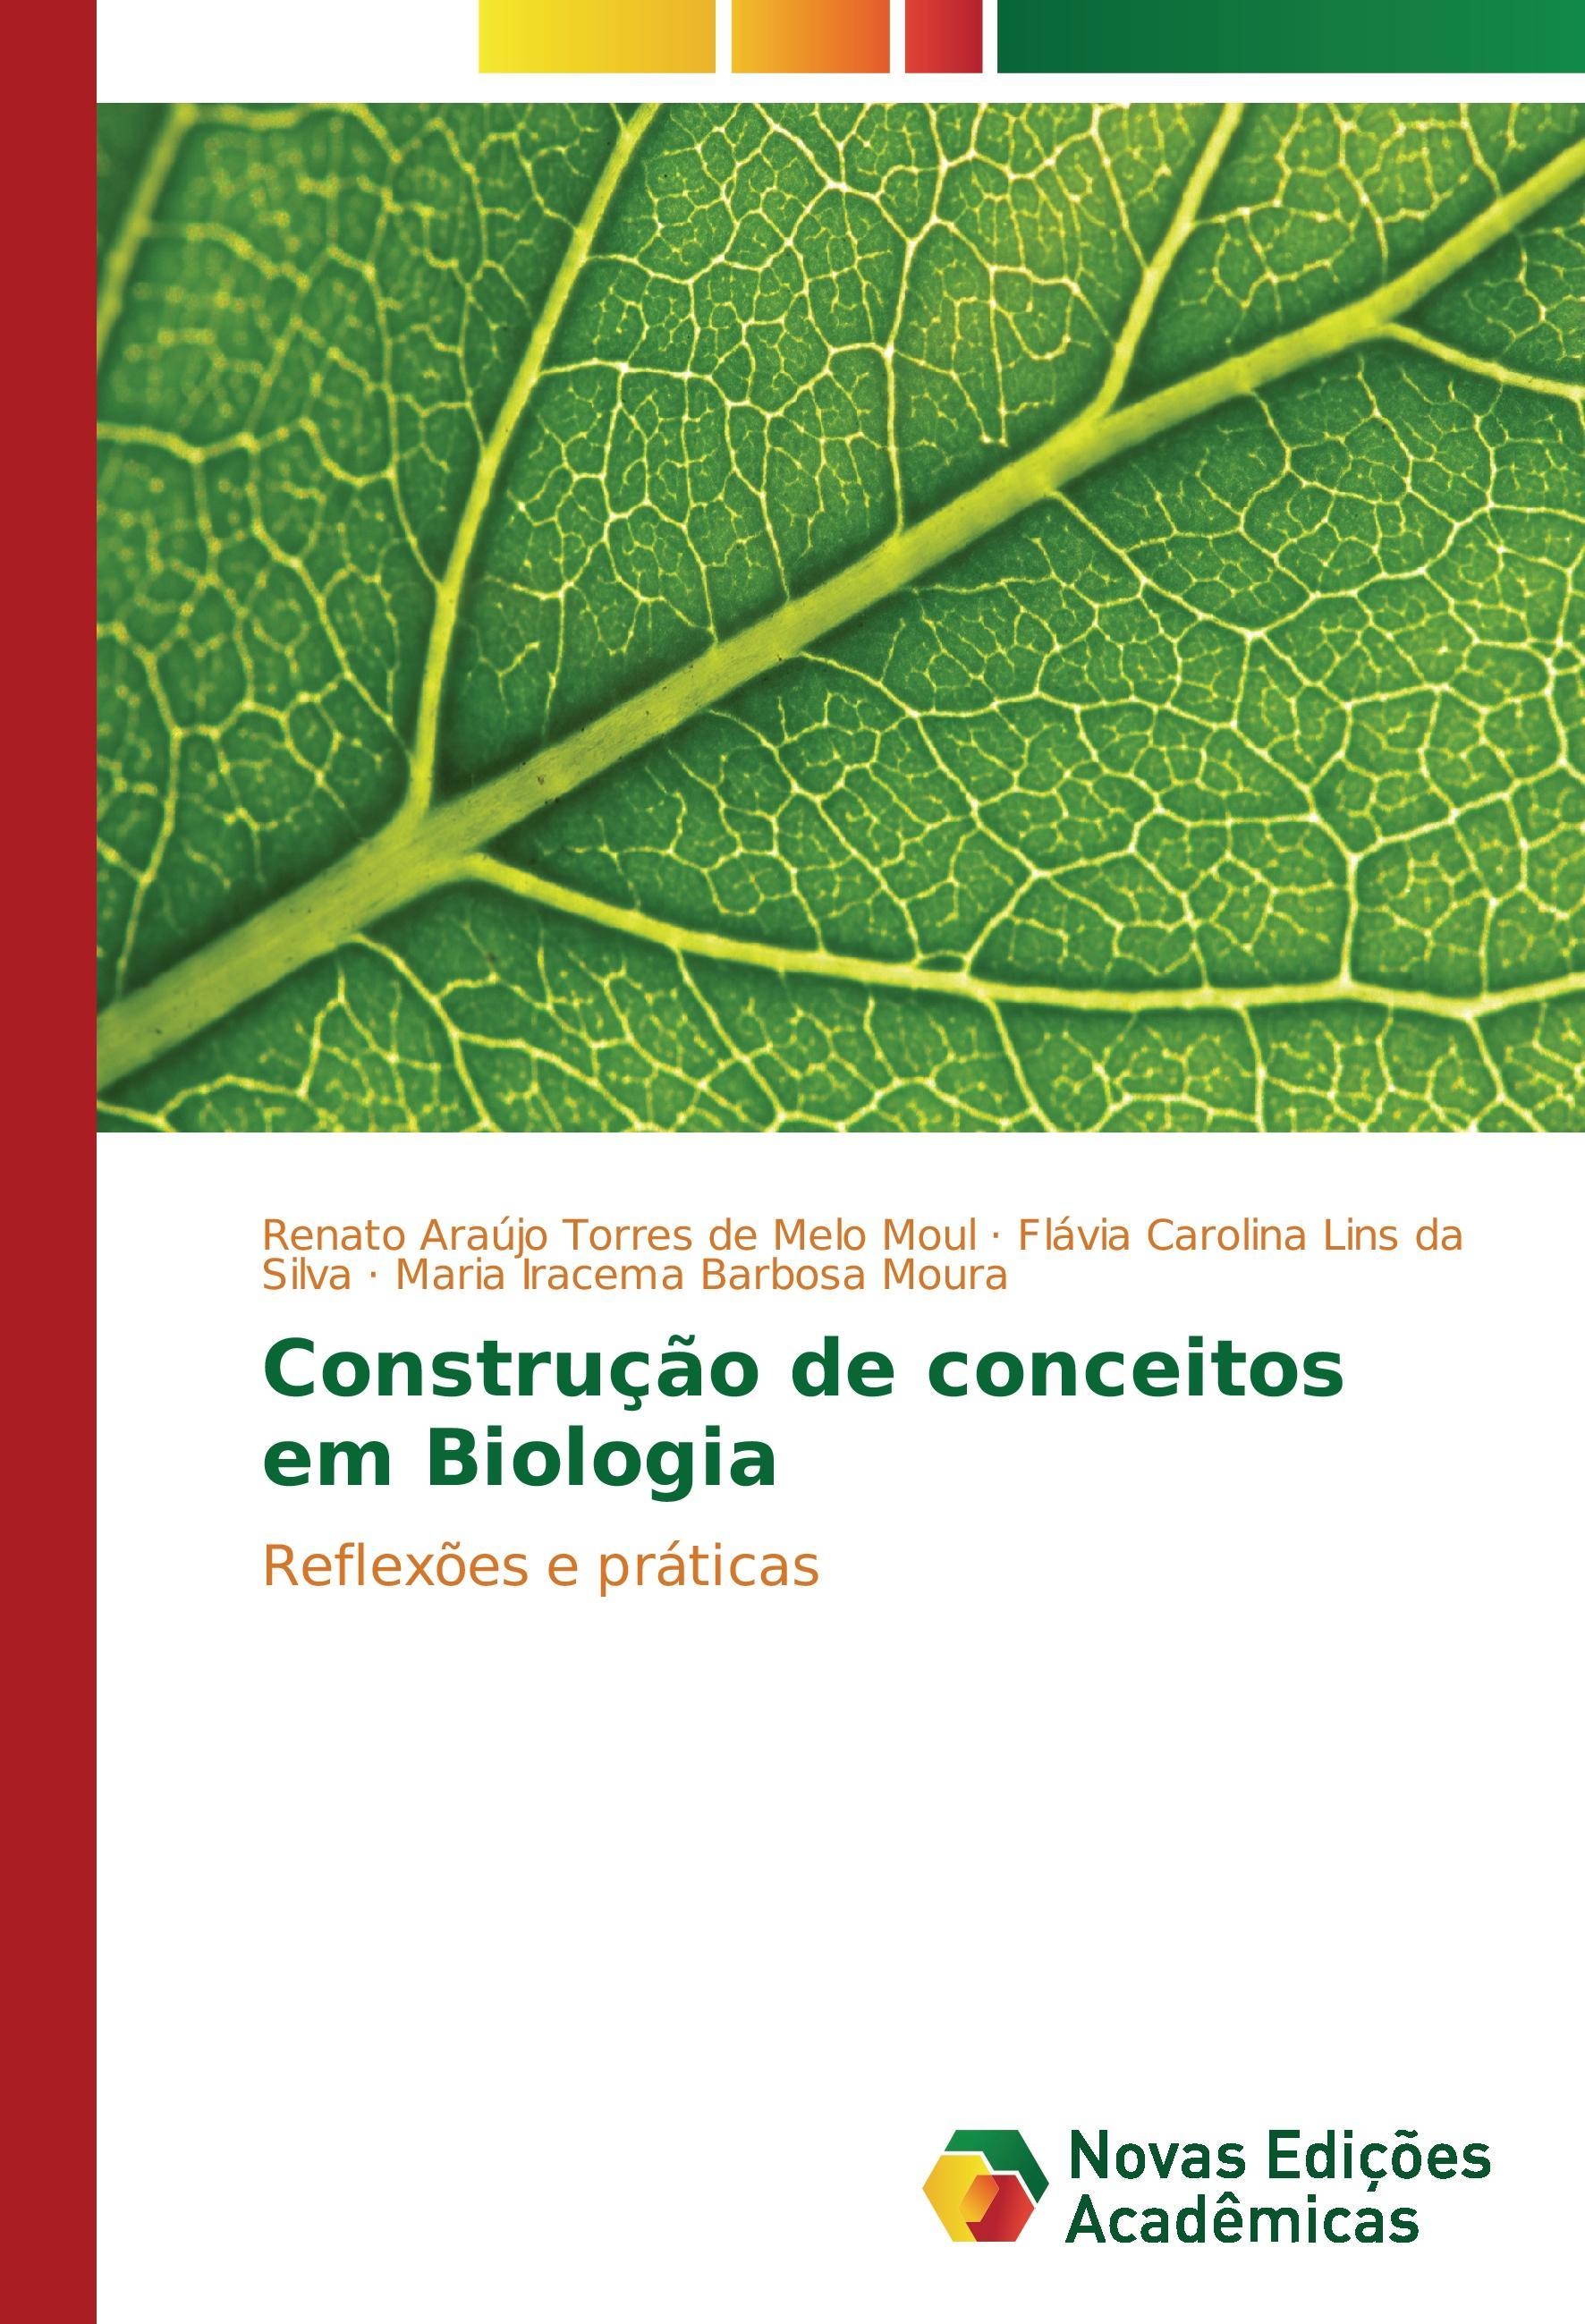 Construção de conceitos em Biologia - Moul, Renato Araújo Torres de Melo Lins da Silva, Flávia Carolina Moura, Maria Iracema Barbosa